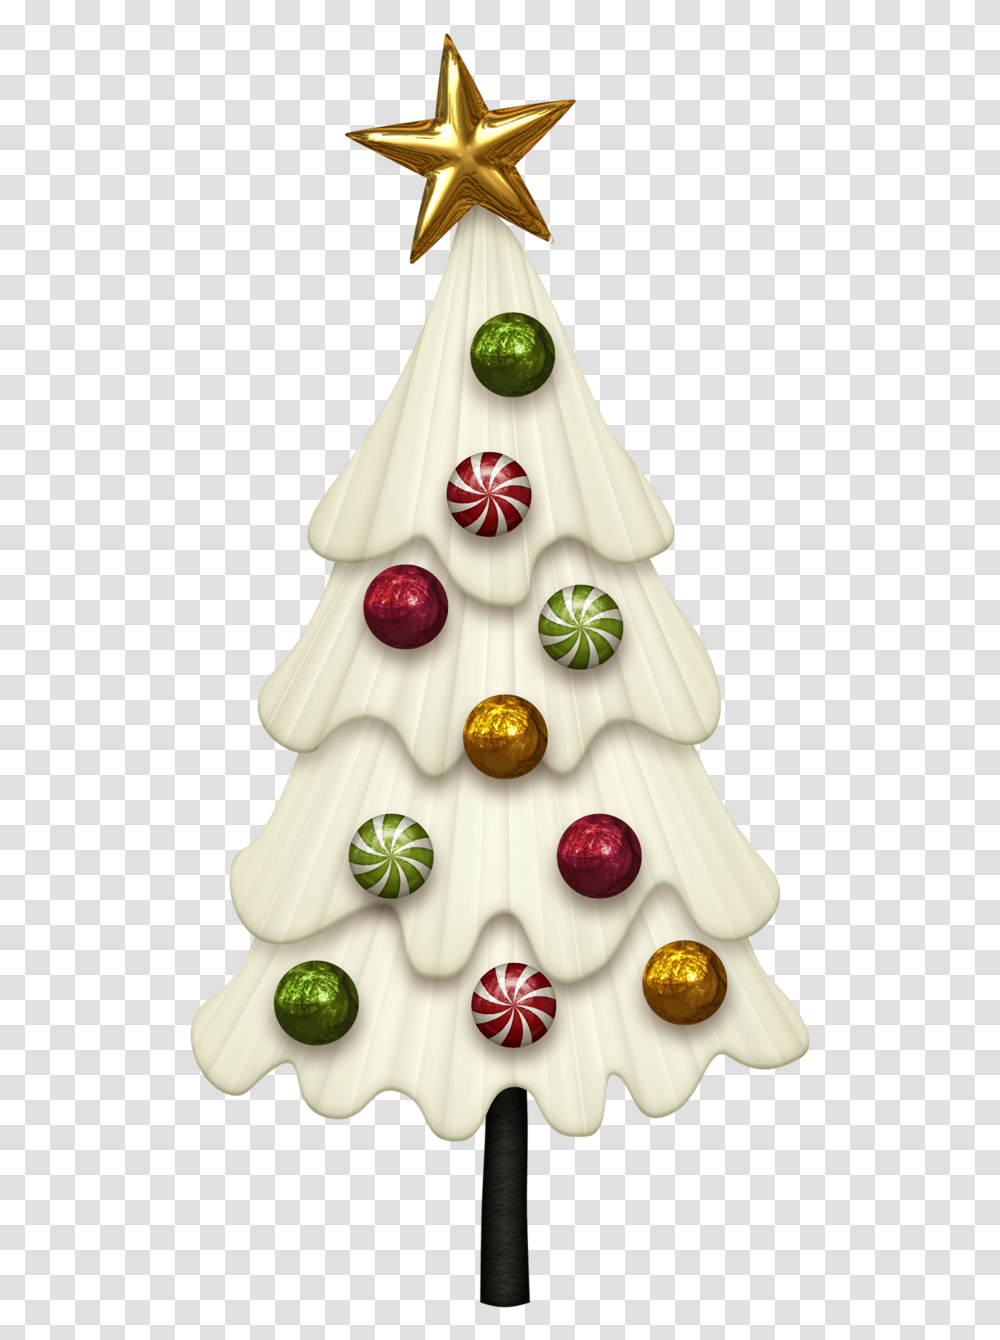 Cane Drawing Christmas Ornament Faire Des Dessin Avec De La Pate, Tree, Plant, Christmas Tree, Fir Transparent Png